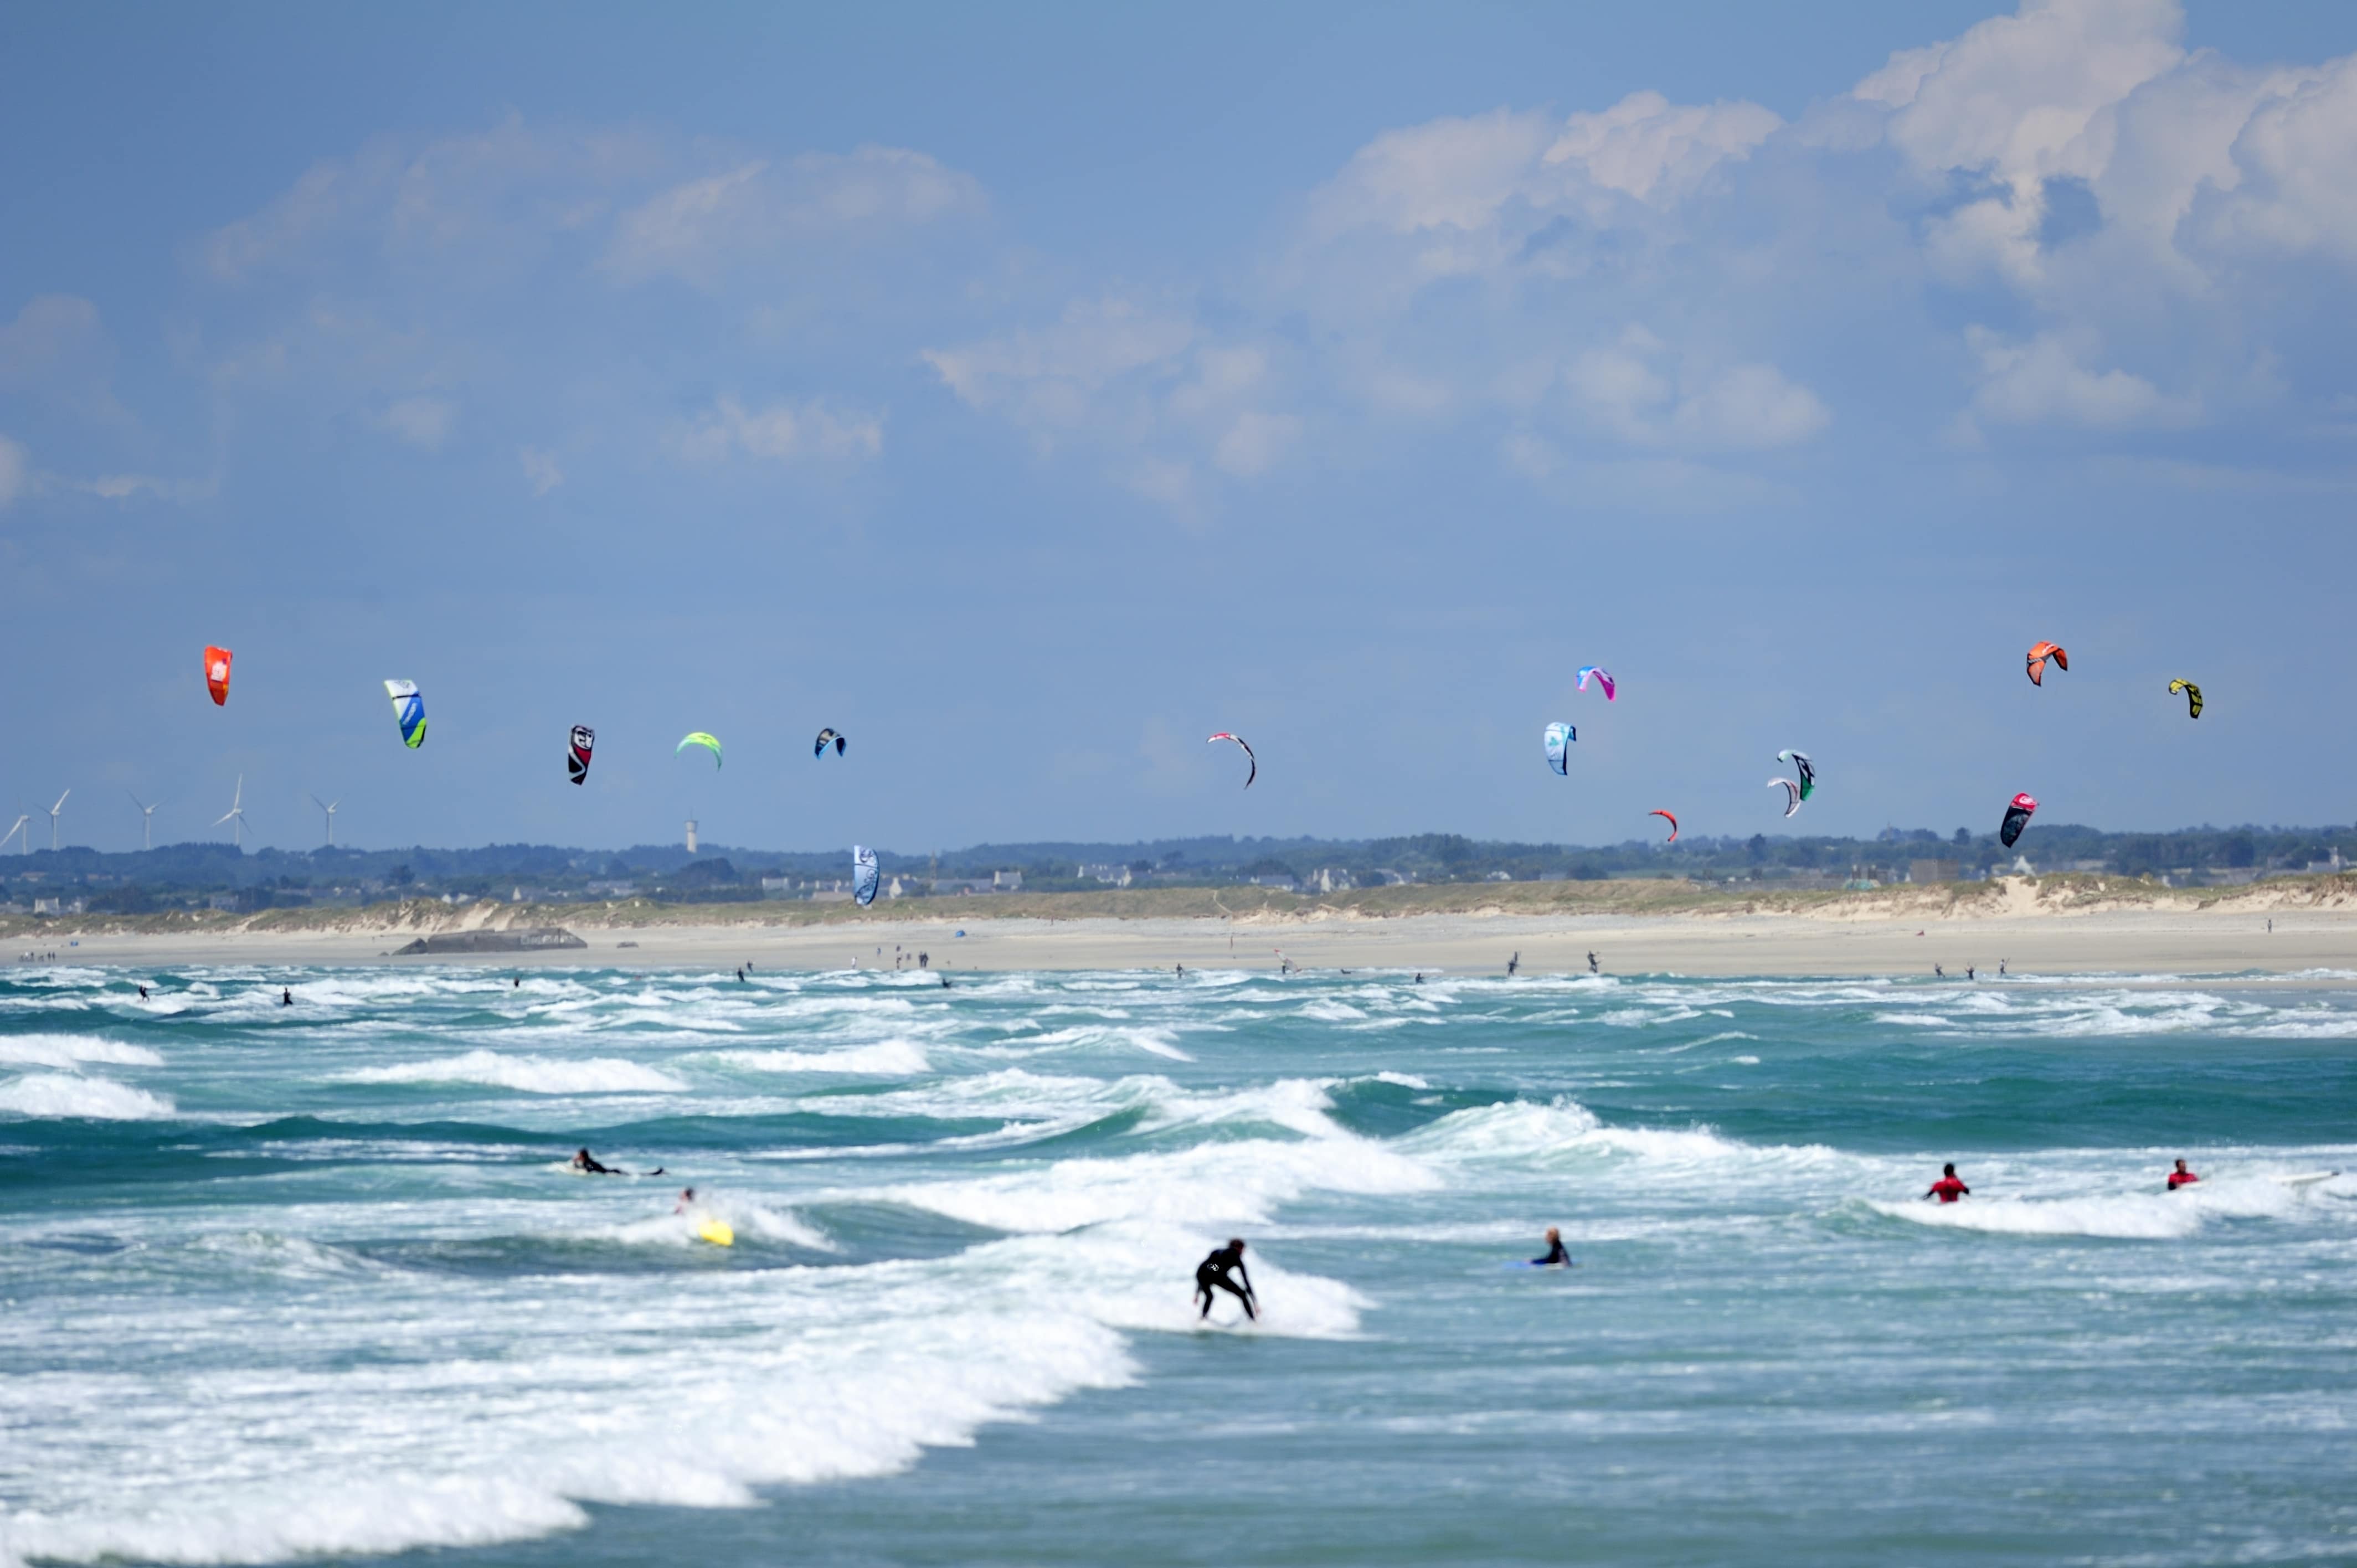 Vue sur la mer, des surfeurs surfent sur les vagues, et sur la plage au loin, au-dessus de laquelle volent des cerfs-volants